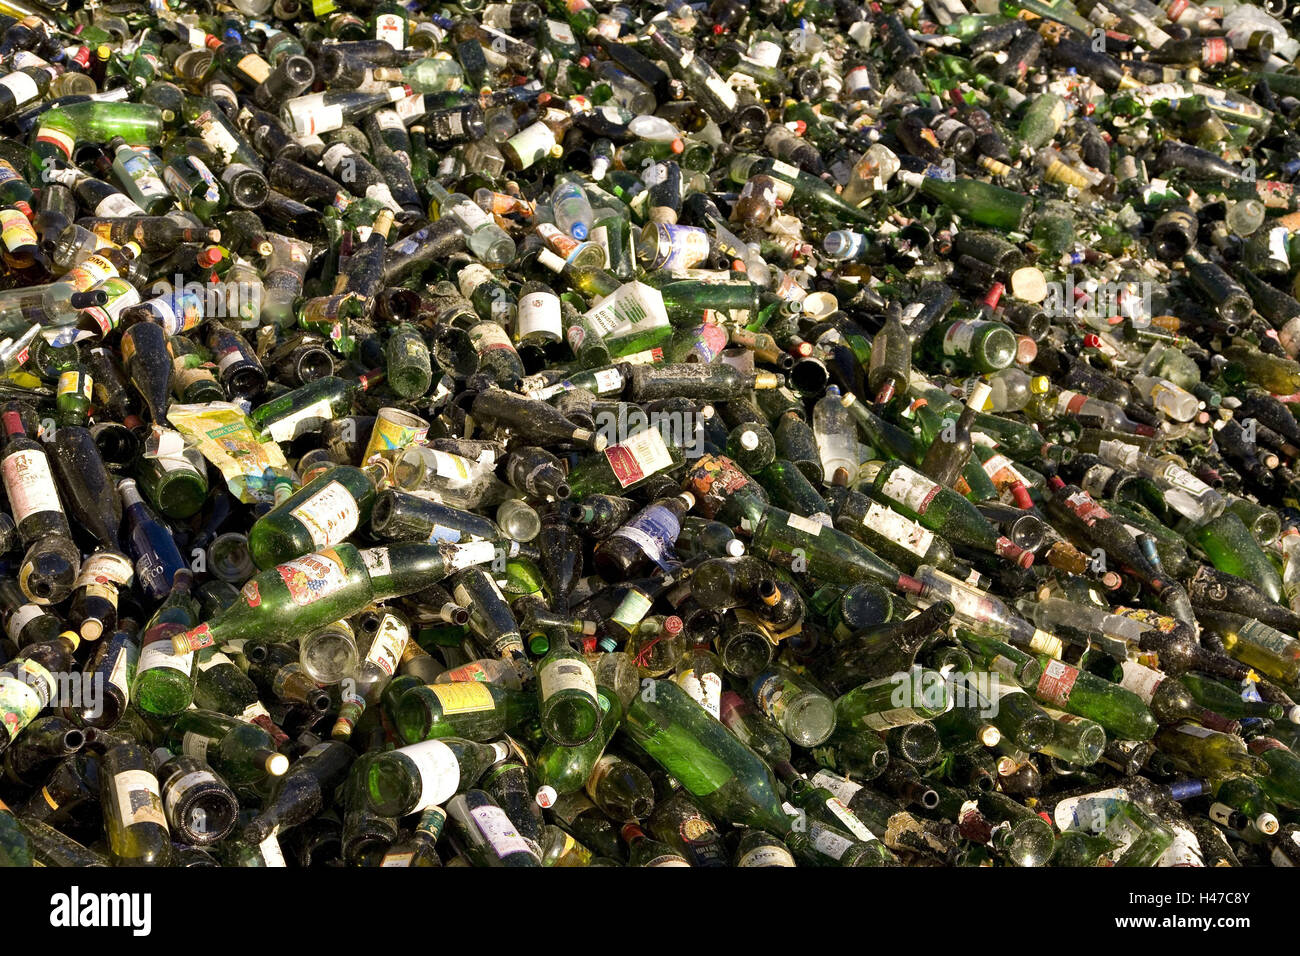 Reciclaje, viejos, botellas de vidrio, el medio ambiente, la protección del medio ambiente, los desechos industriales, basura, desechos de economía, basura, colectivo, planta de reciclado, vidrio reciclado, separación de basura, vidrio, vidrio coloreado, botellas, frascos de vidrio, accumulatedly matraz, montaña, muchos, cantidad enormes cantidades, pile, acumulación, materias primas, el reciclaje, la amplia utilización, reutilización, reelaboración, separación, Concepción, icono, tirados en blanco, la sociedad de consumo, la transitoriedad, Foto de stock